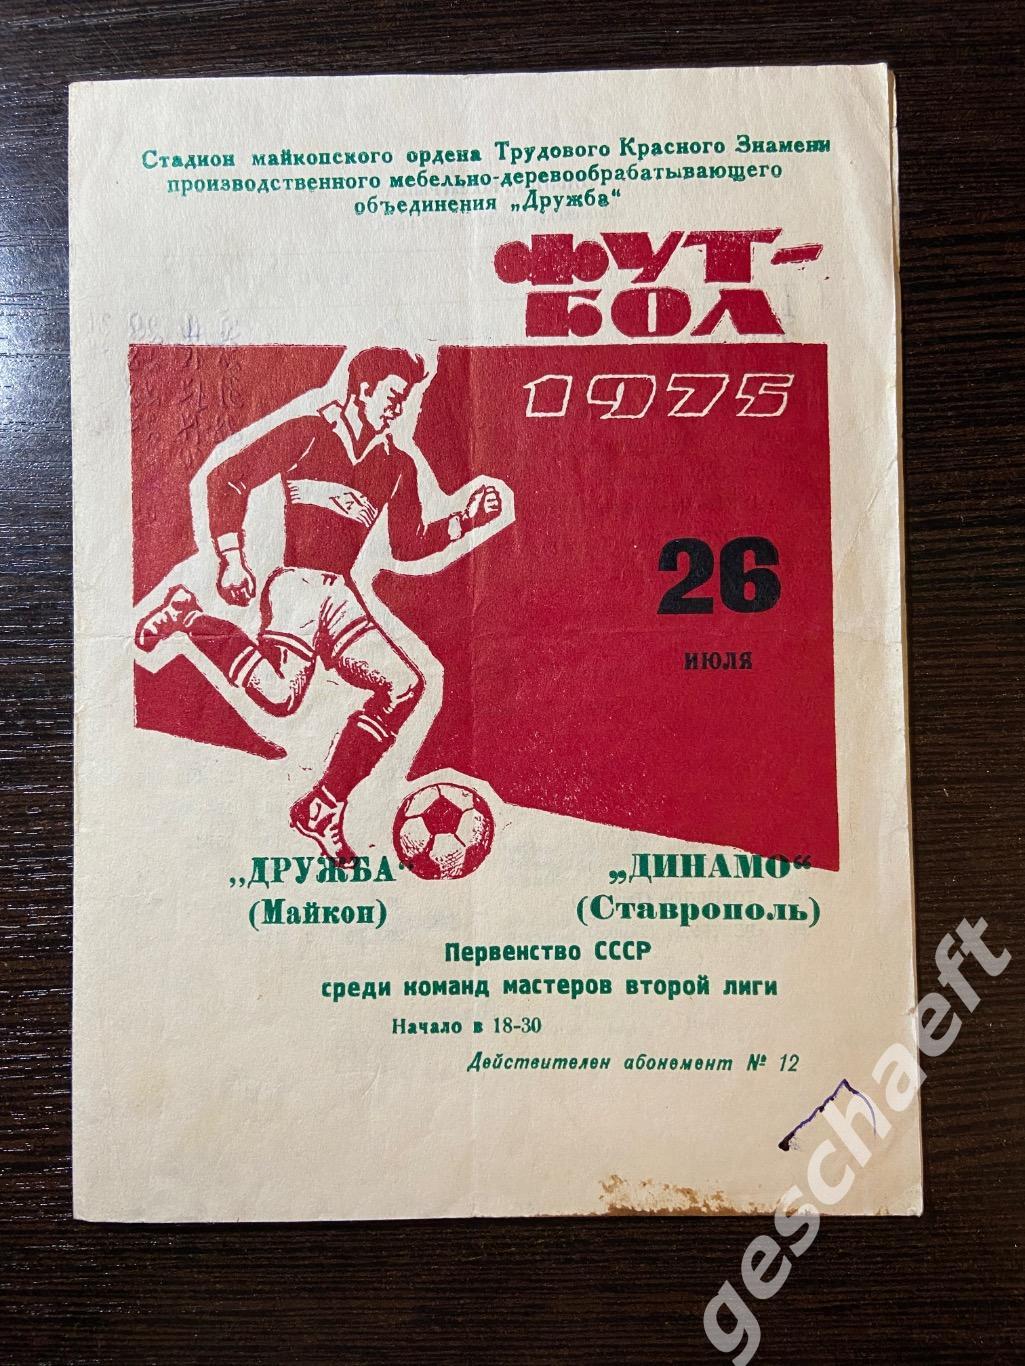 Дружба Майкоп - Динамо Ставрополь 26.07.1975